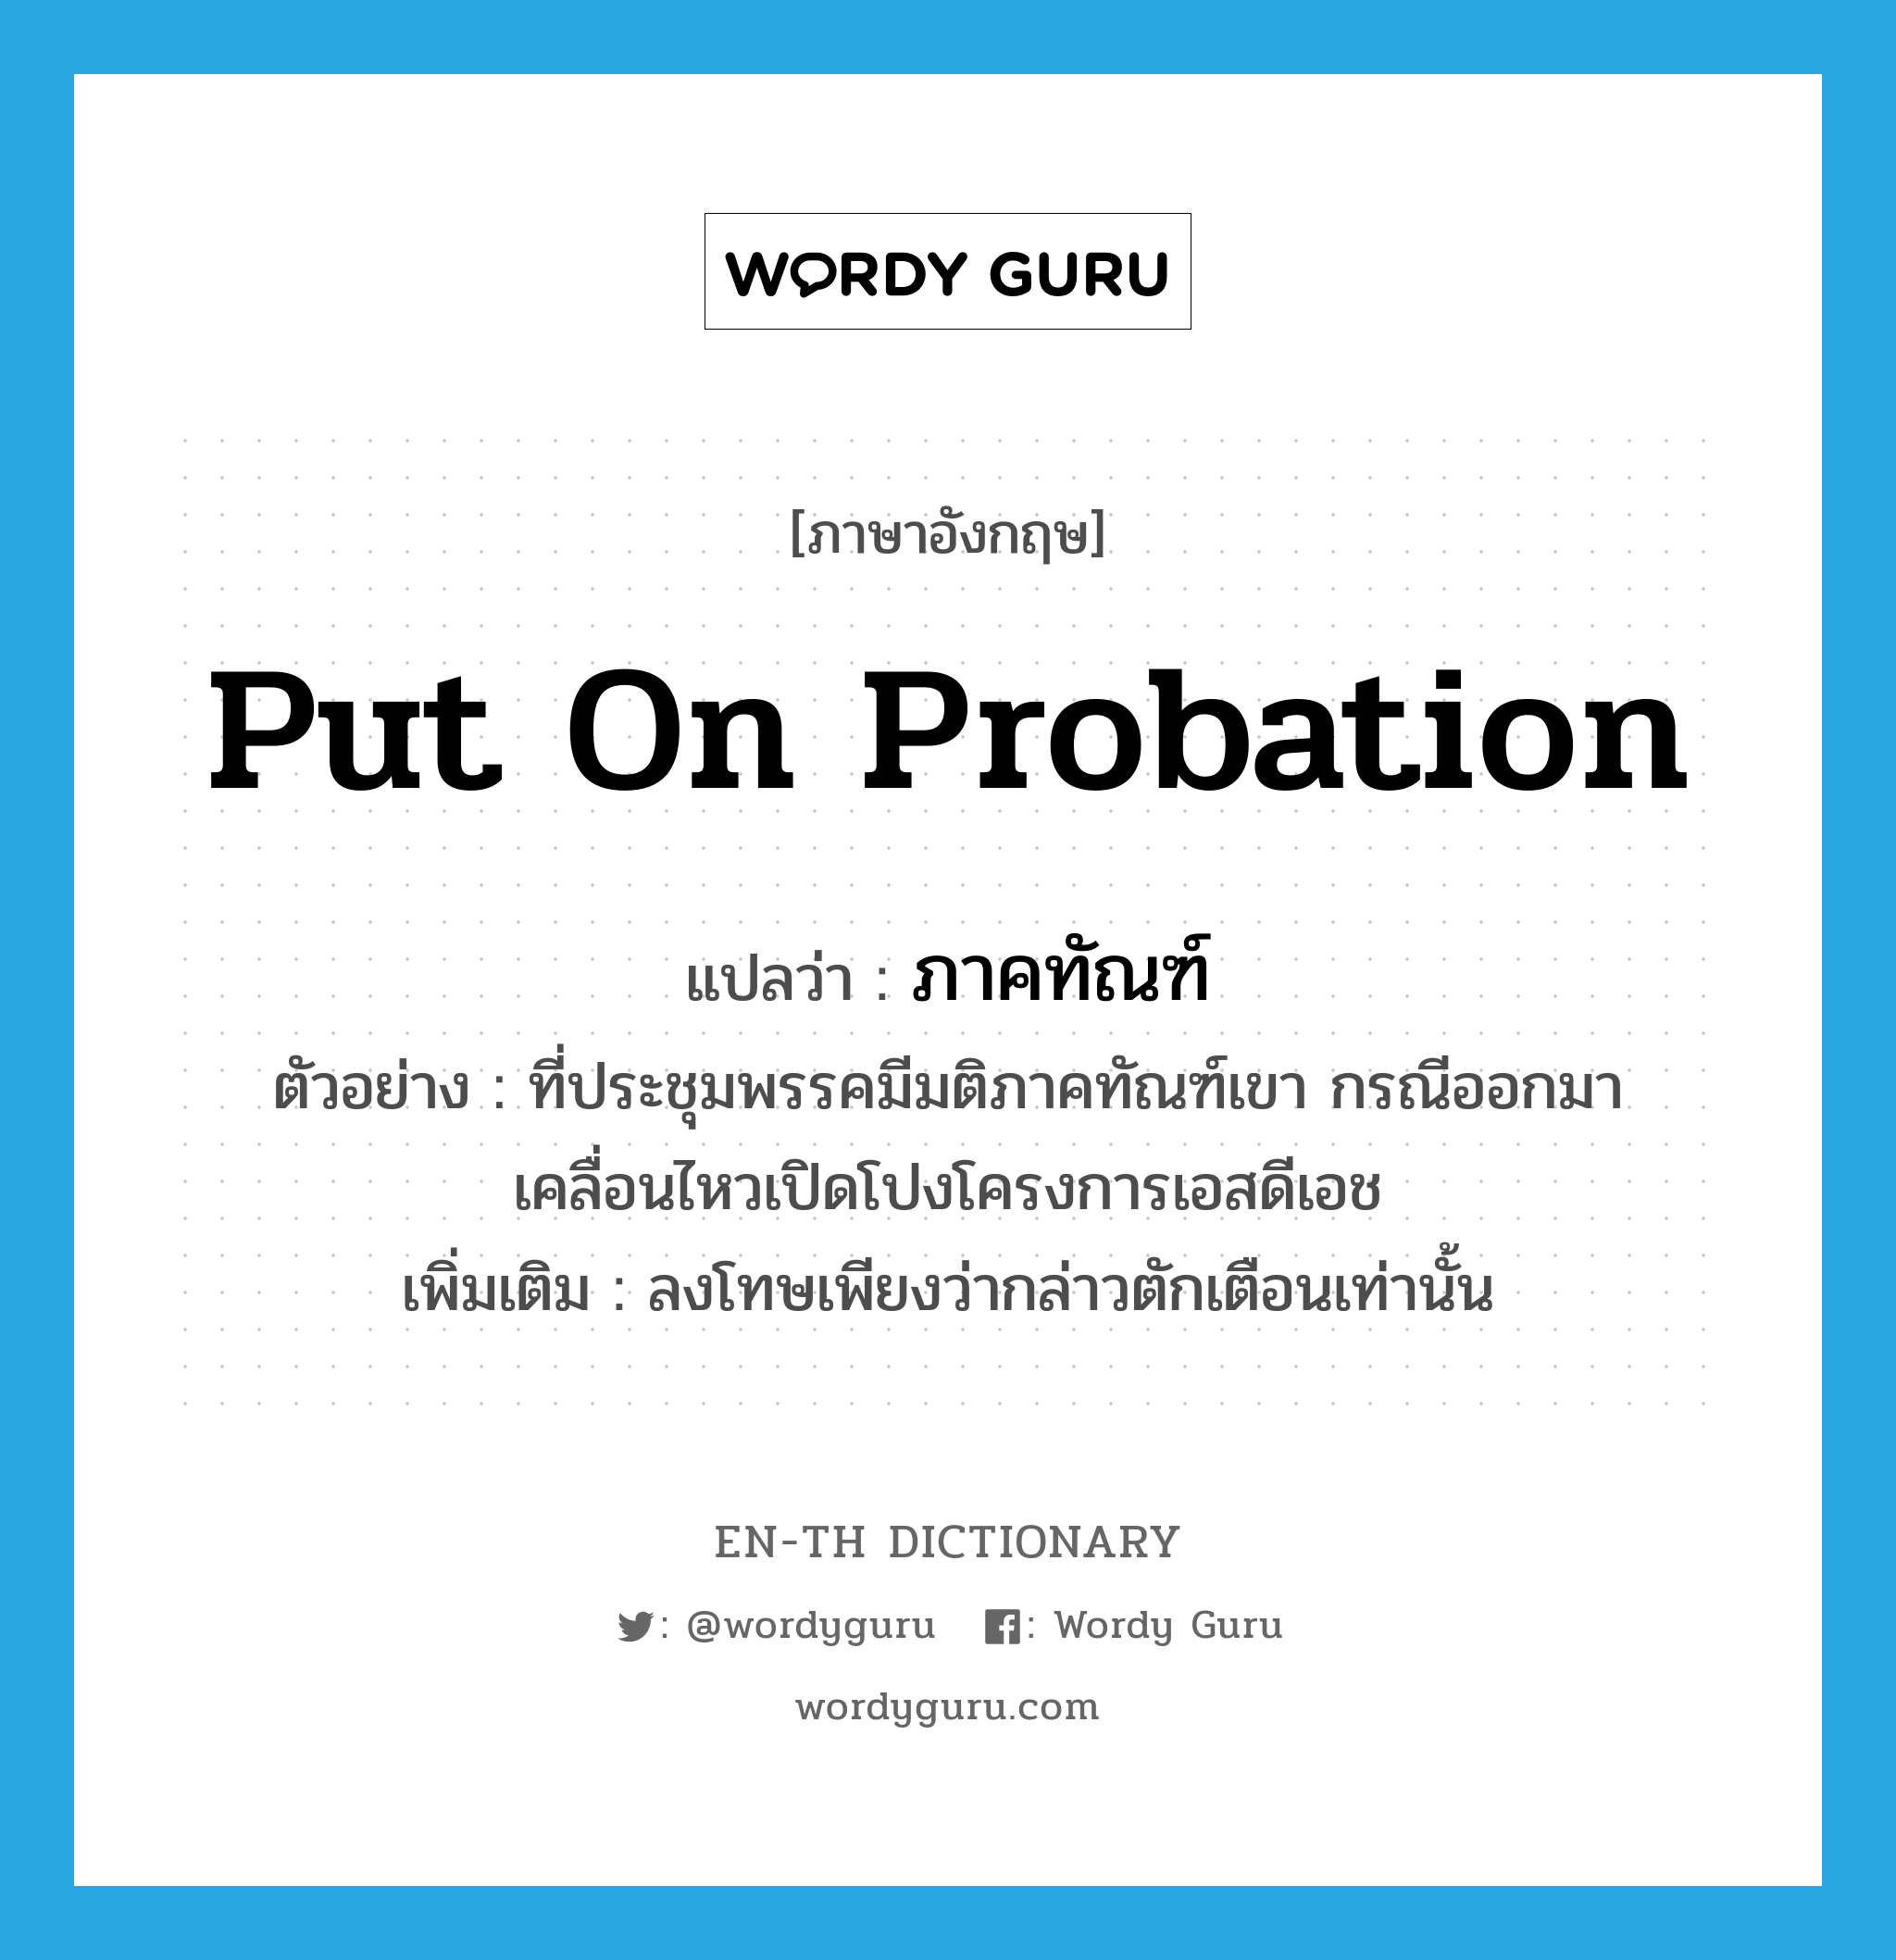 put on probation แปลว่า?, คำศัพท์ภาษาอังกฤษ put on probation แปลว่า ภาคทัณฑ์ ประเภท V ตัวอย่าง ที่ประชุมพรรคมีมติภาคทัณฑ์เขา กรณีออกมาเคลื่อนไหวเปิดโปงโครงการเอสดีเอช เพิ่มเติม ลงโทษเพียงว่ากล่าวตักเตือนเท่านั้น หมวด V